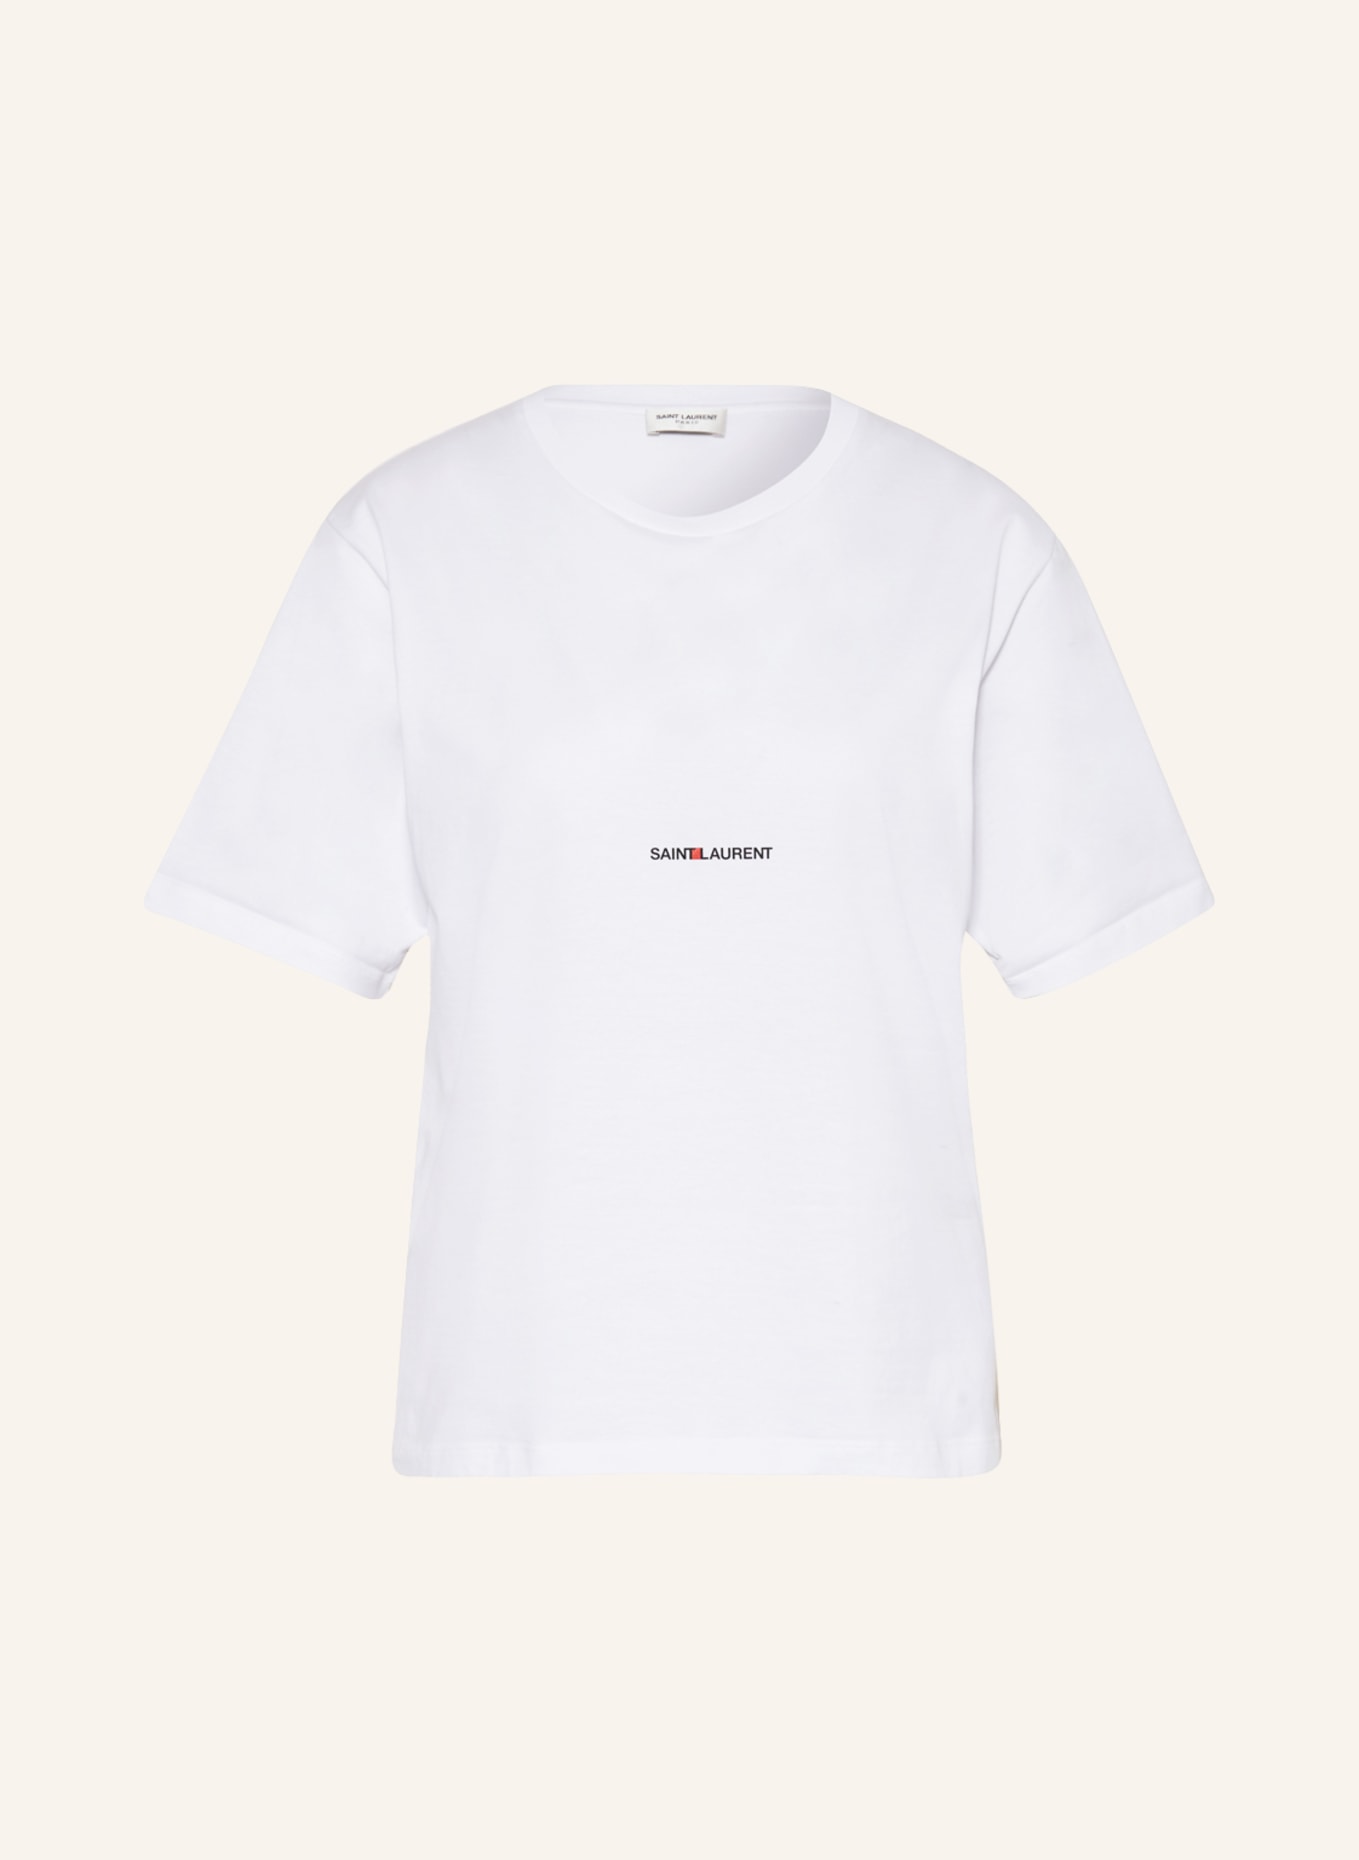 SAINT LAURENT T-Shirt, Farbe: WEISS (Bild 1)